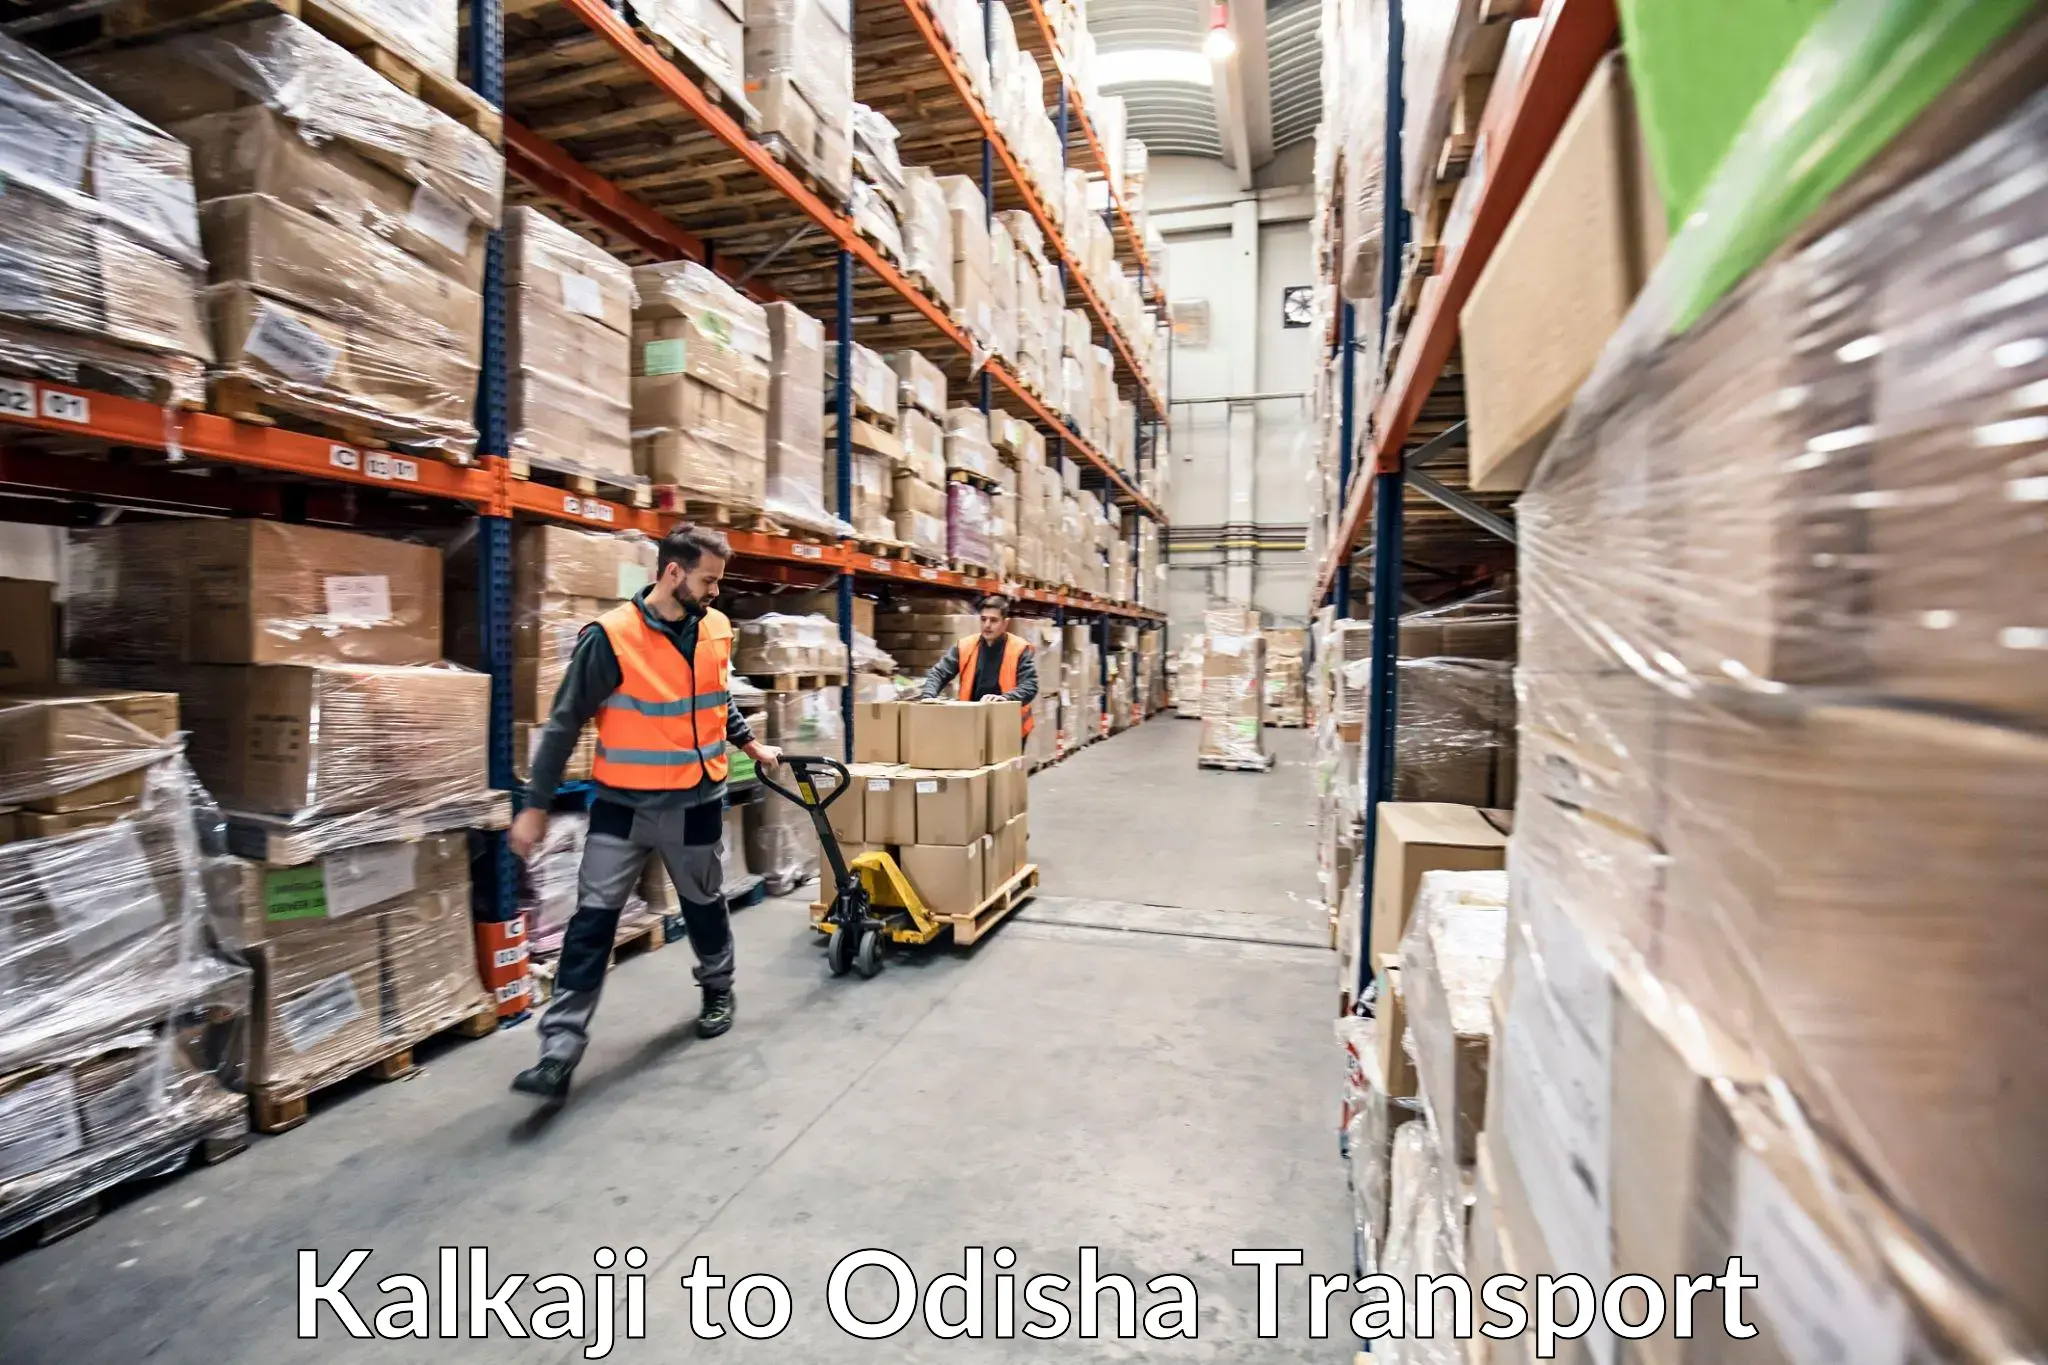 Truck transport companies in India in Kalkaji to Garjanpur